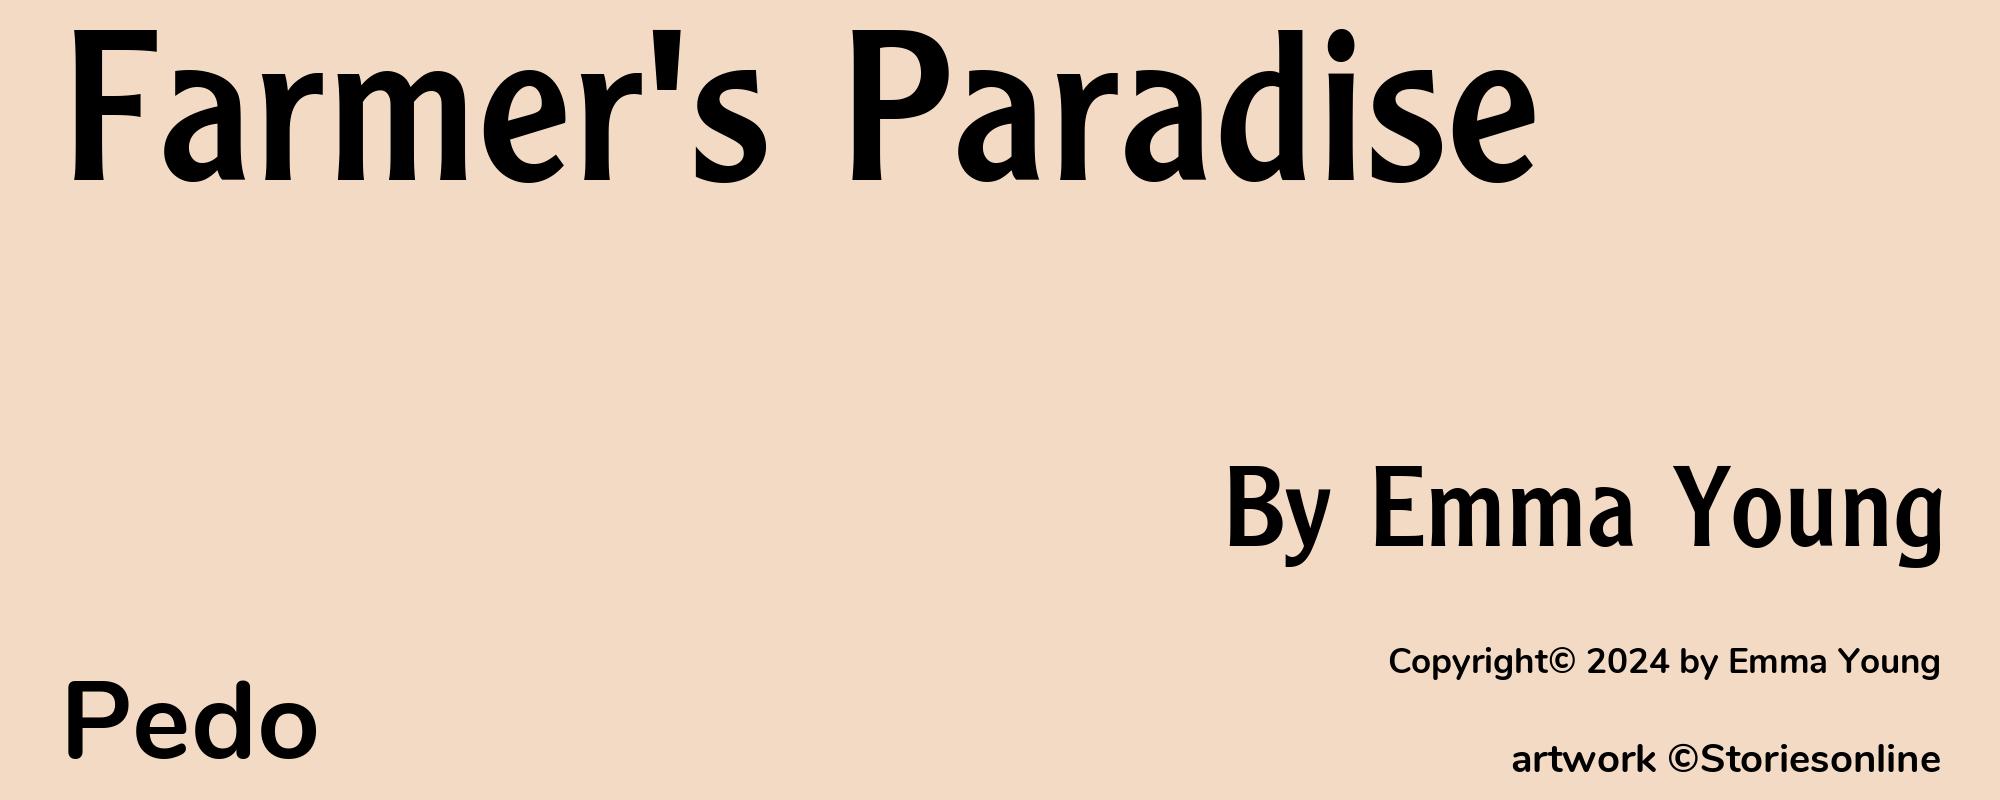 Farmer's Paradise - Cover